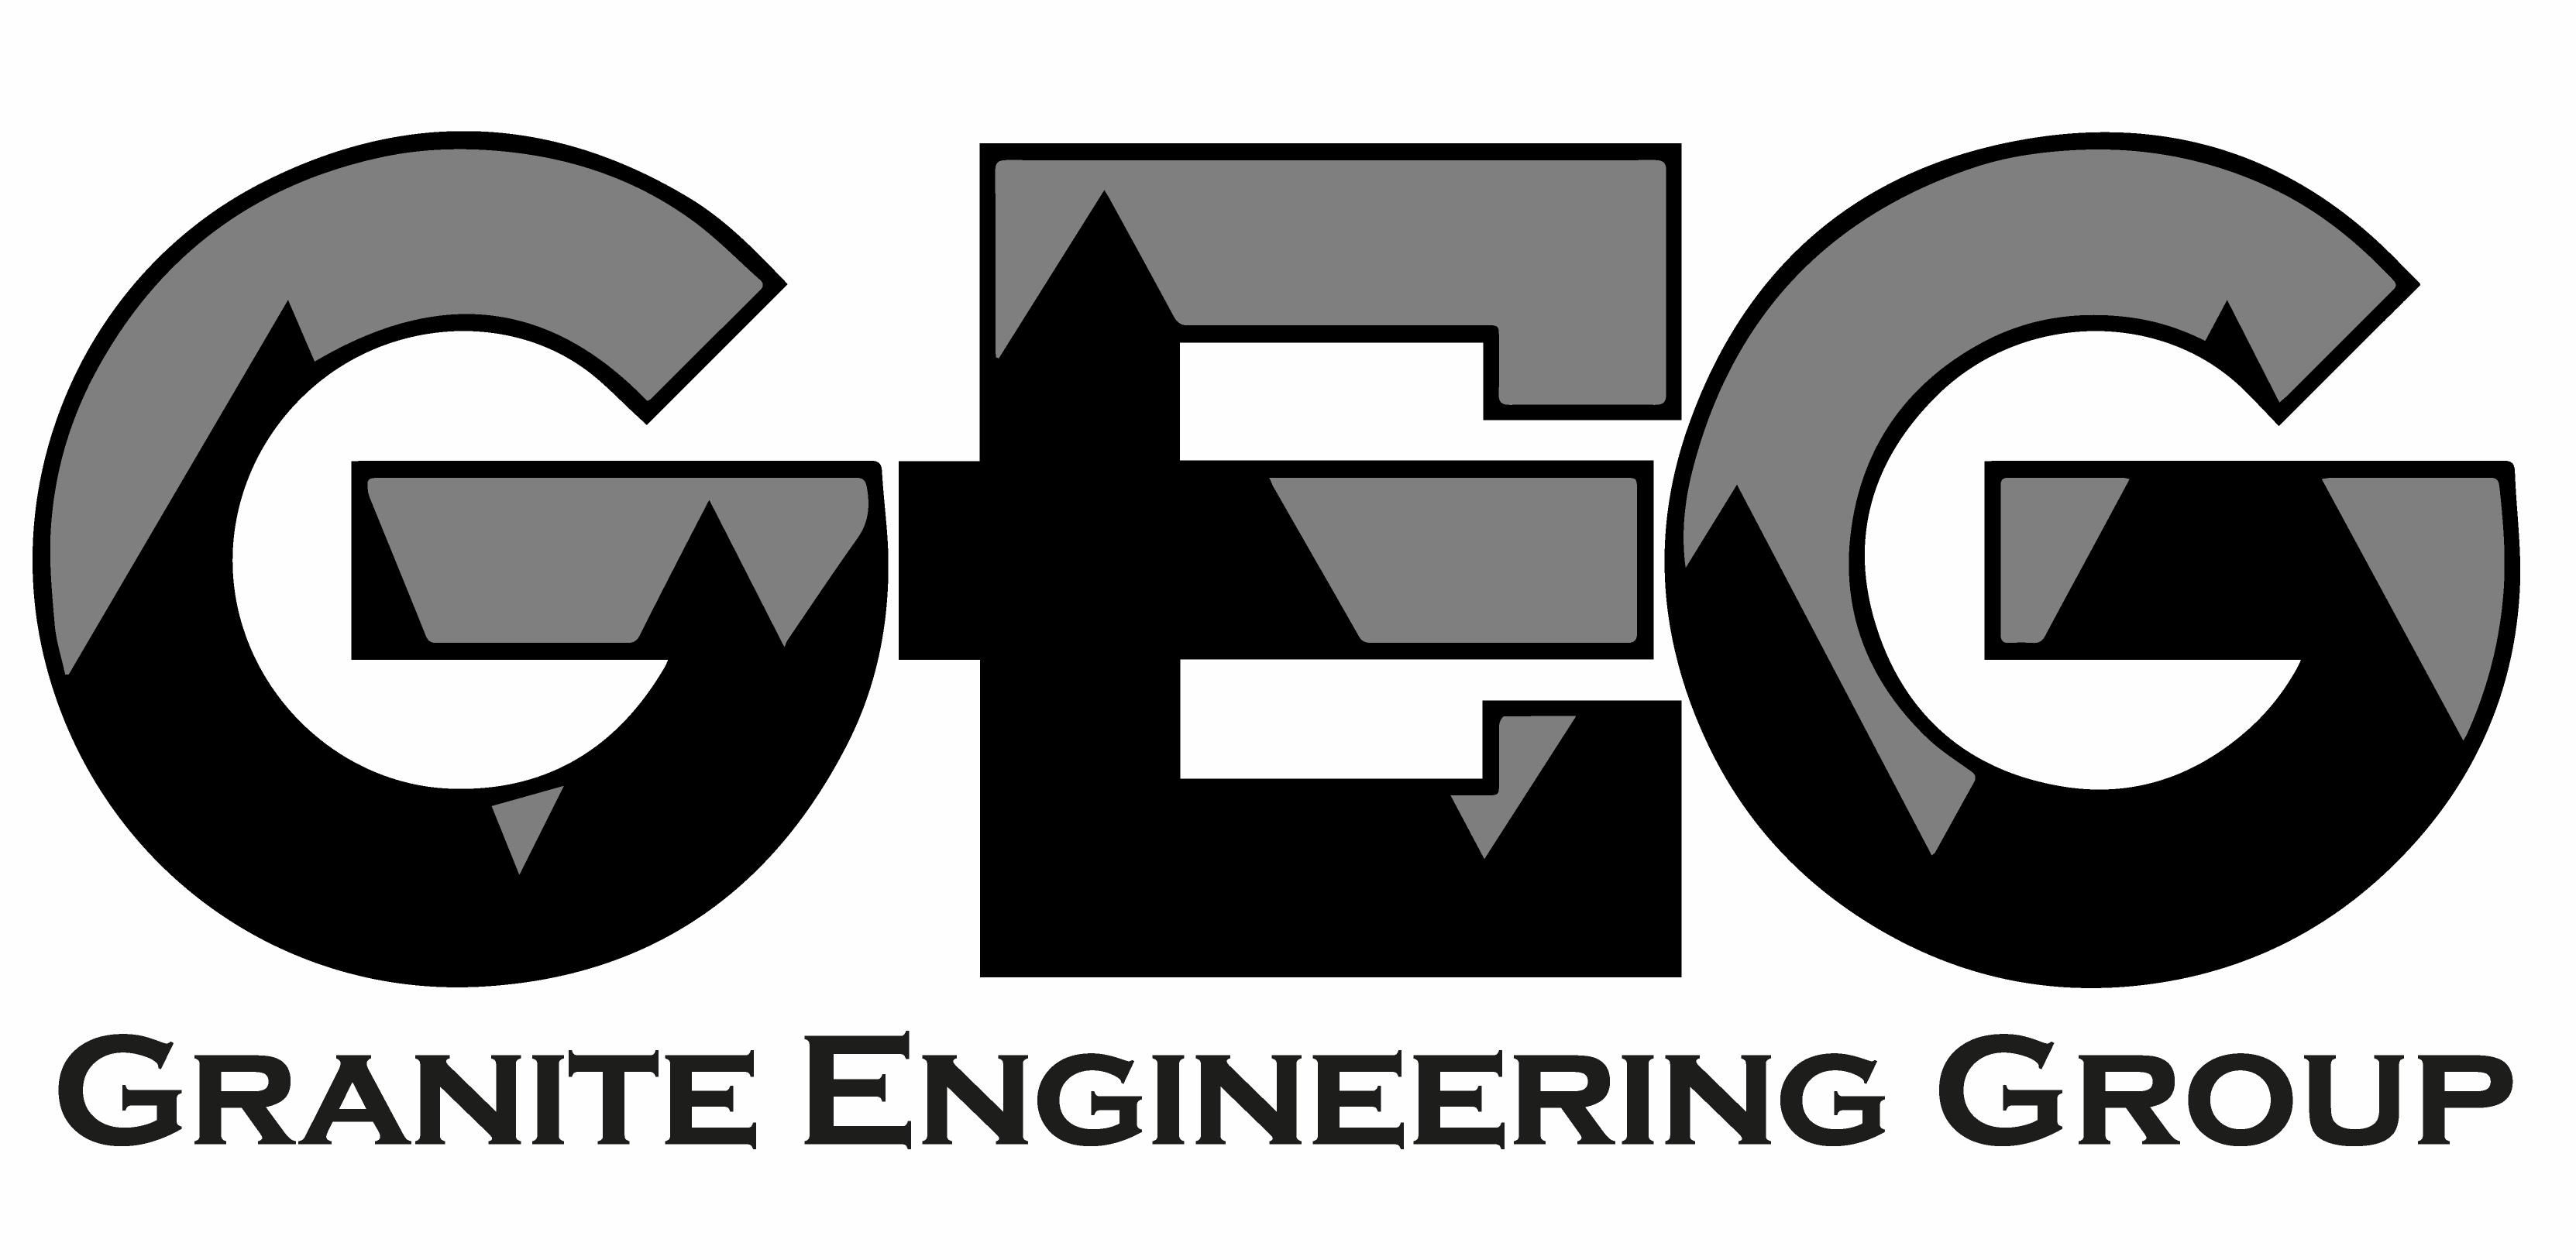 Granite Engineering Group logo.png detail image